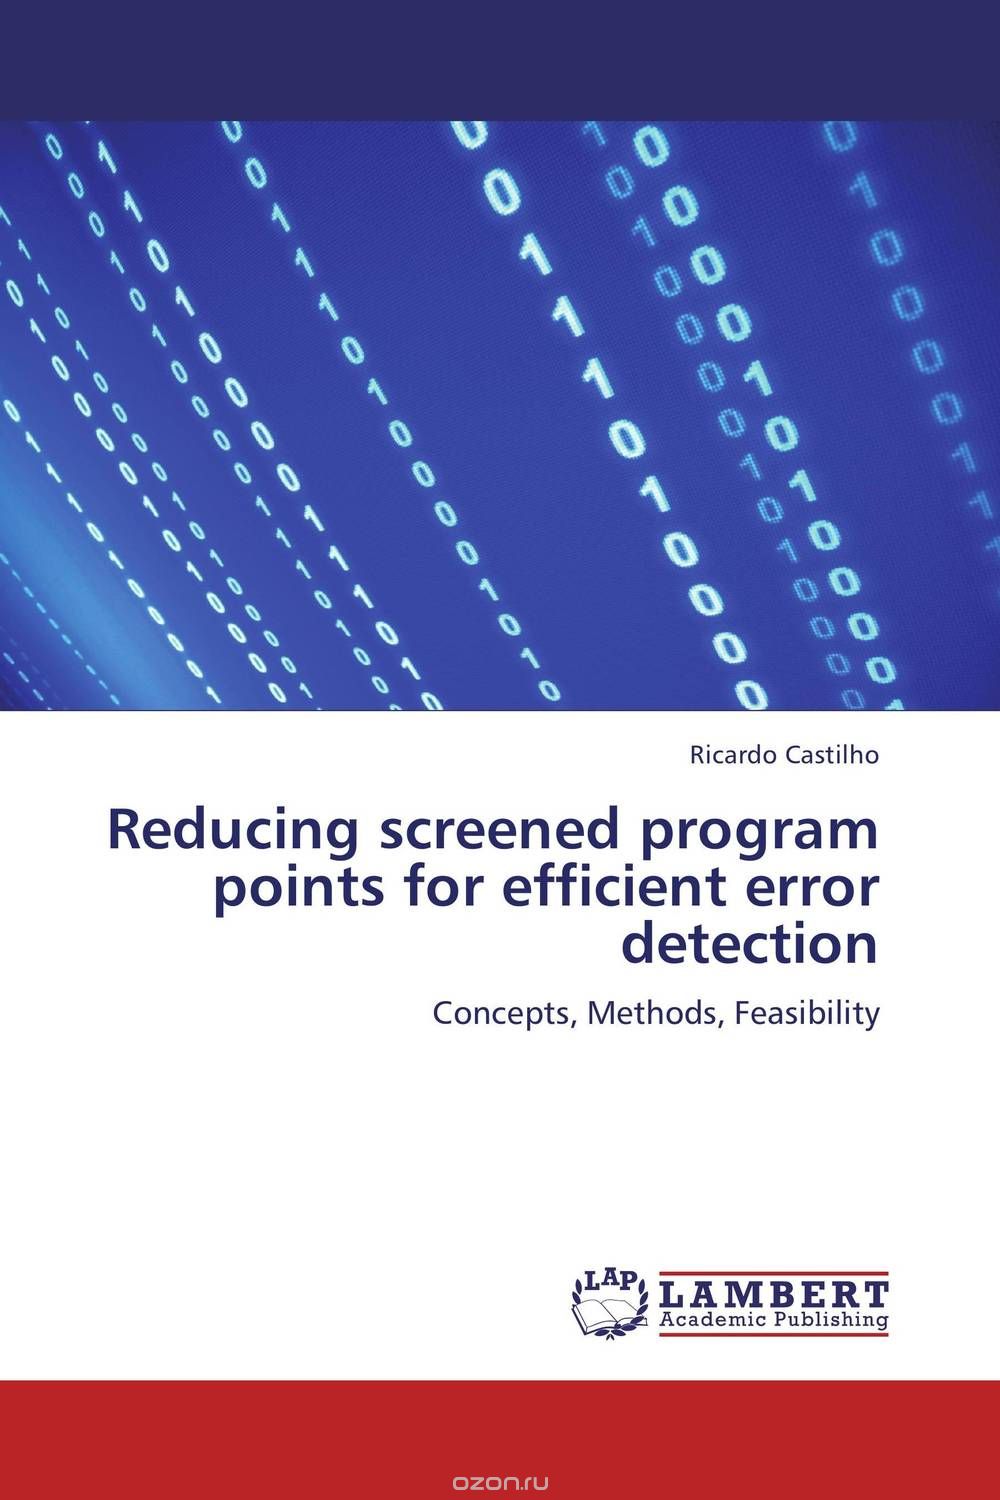 Скачать книгу "Reducing screened program points for efficient error detection"